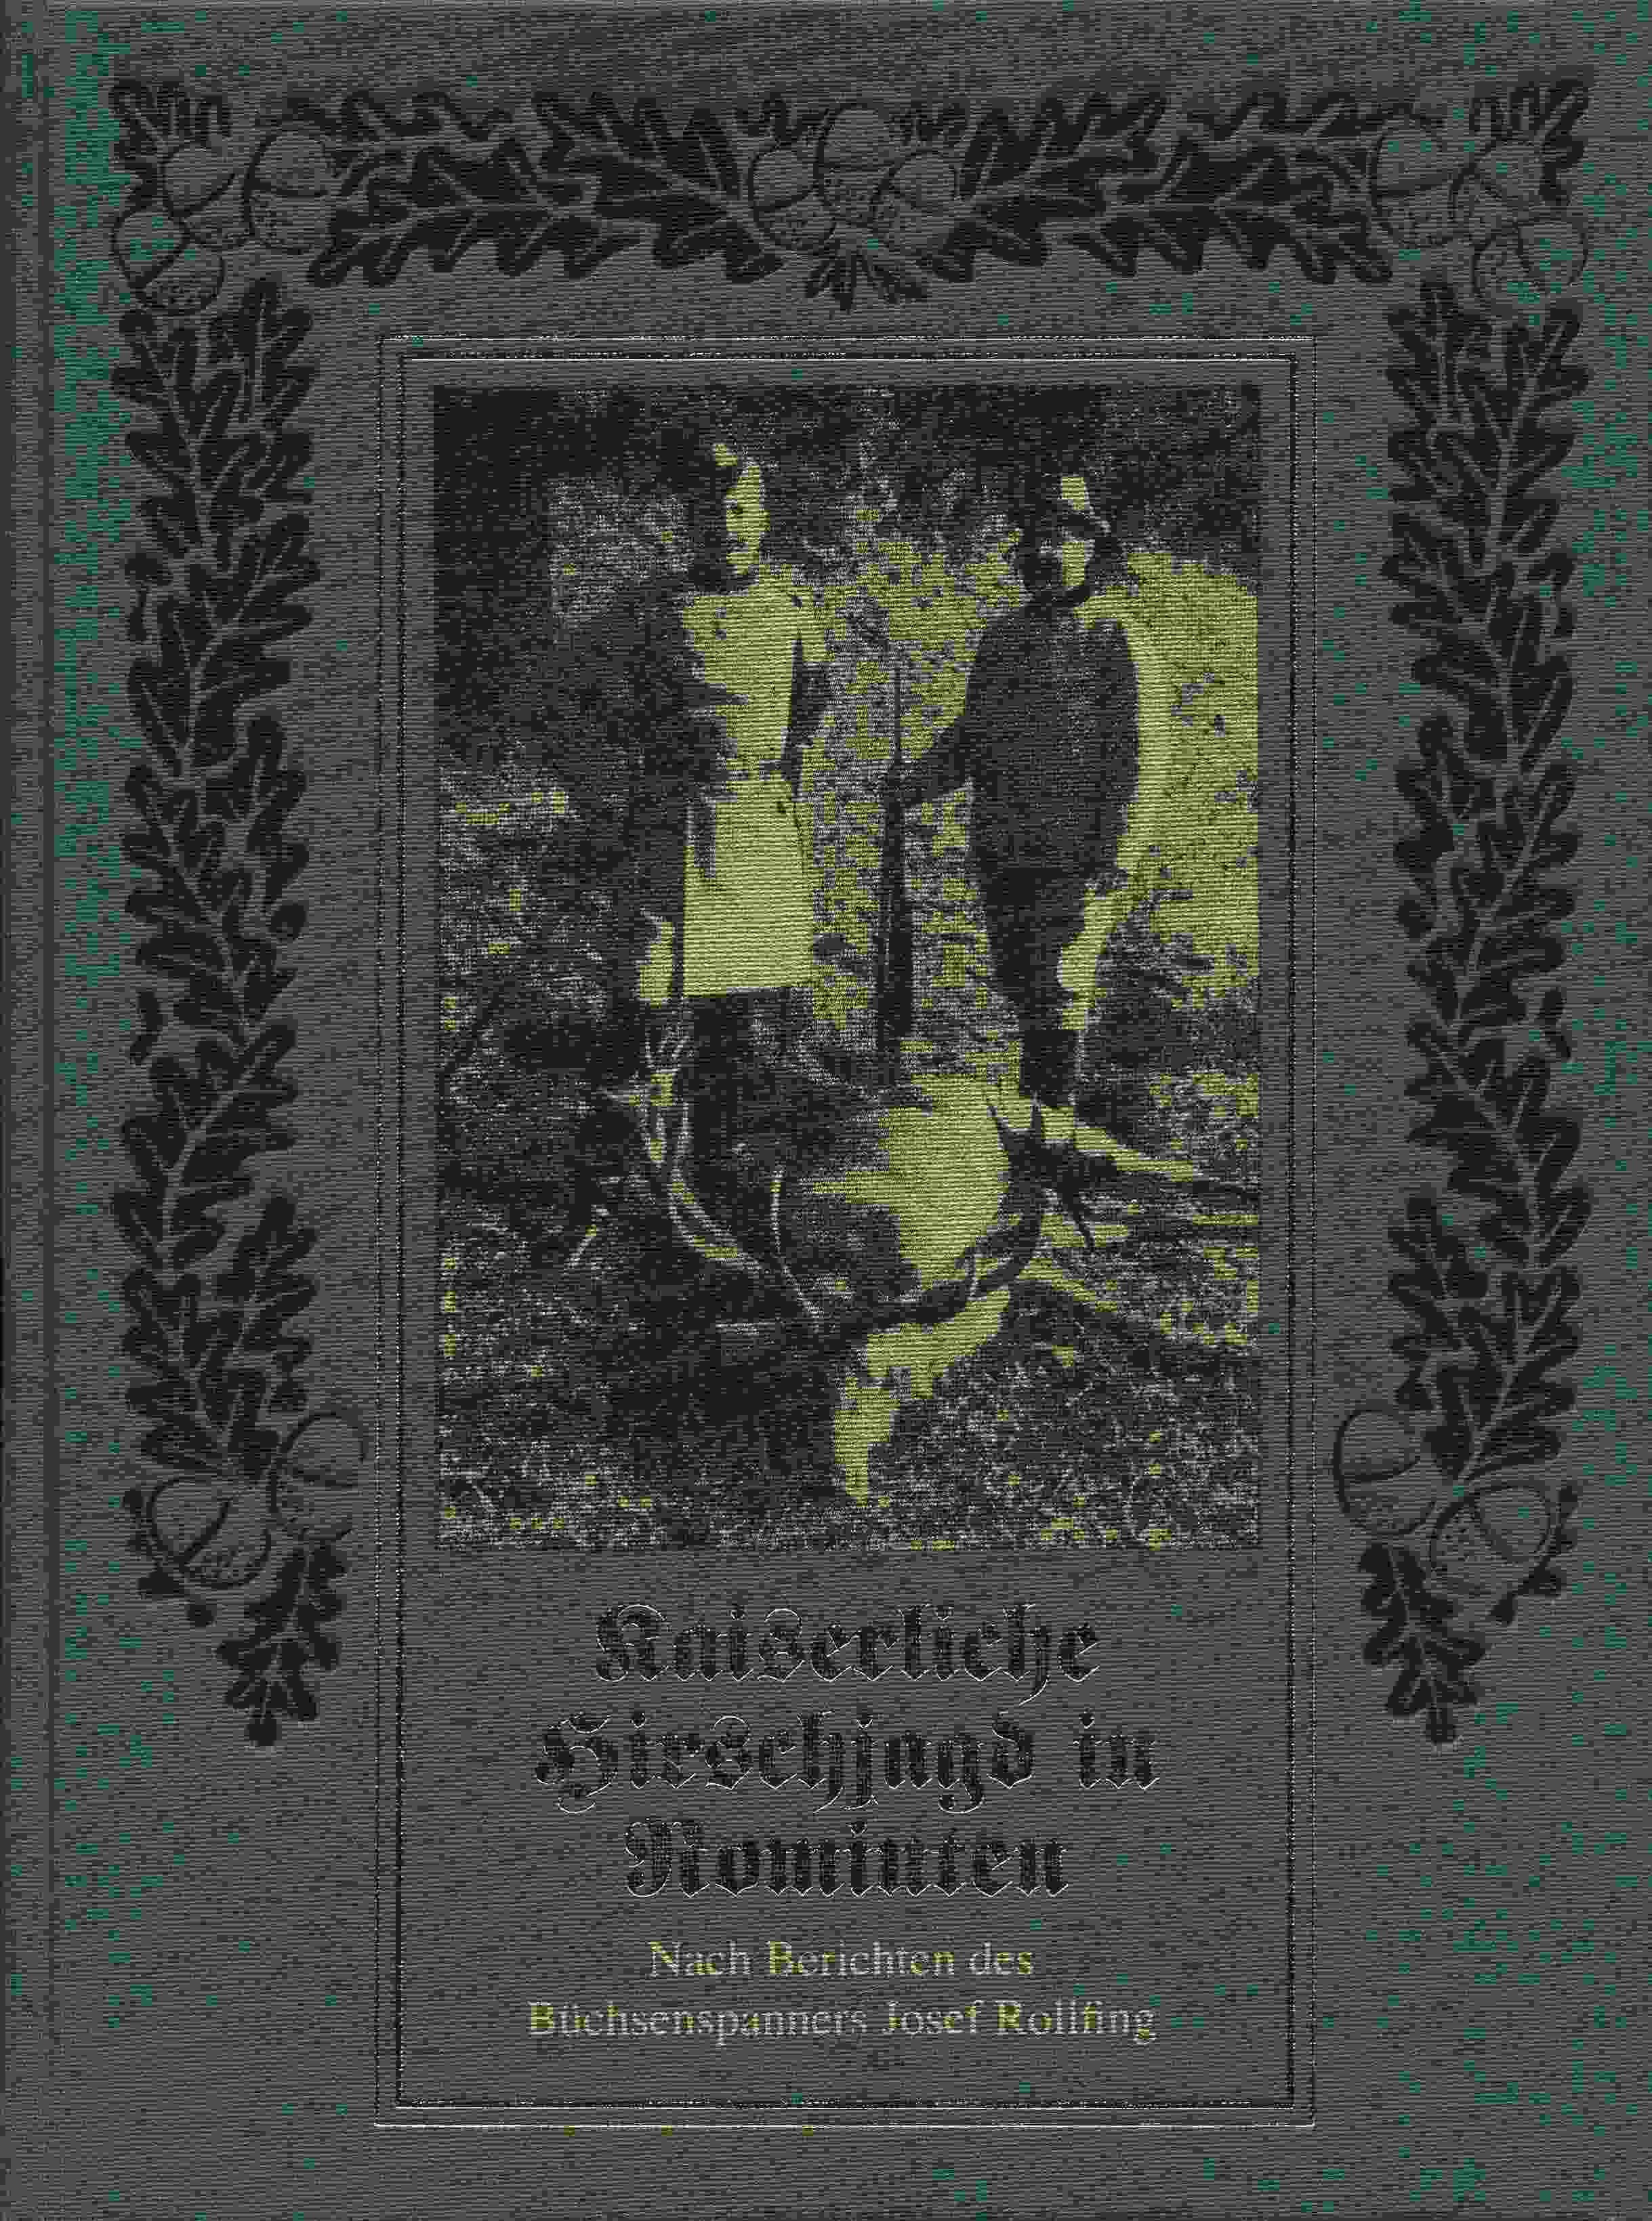 Kaiserliche Hirschjagd in Rominten nach Berichten des Büchsenspanners Josef Rollfing von 1896-1913. - Gautschi, Andreas (Hrsg.)